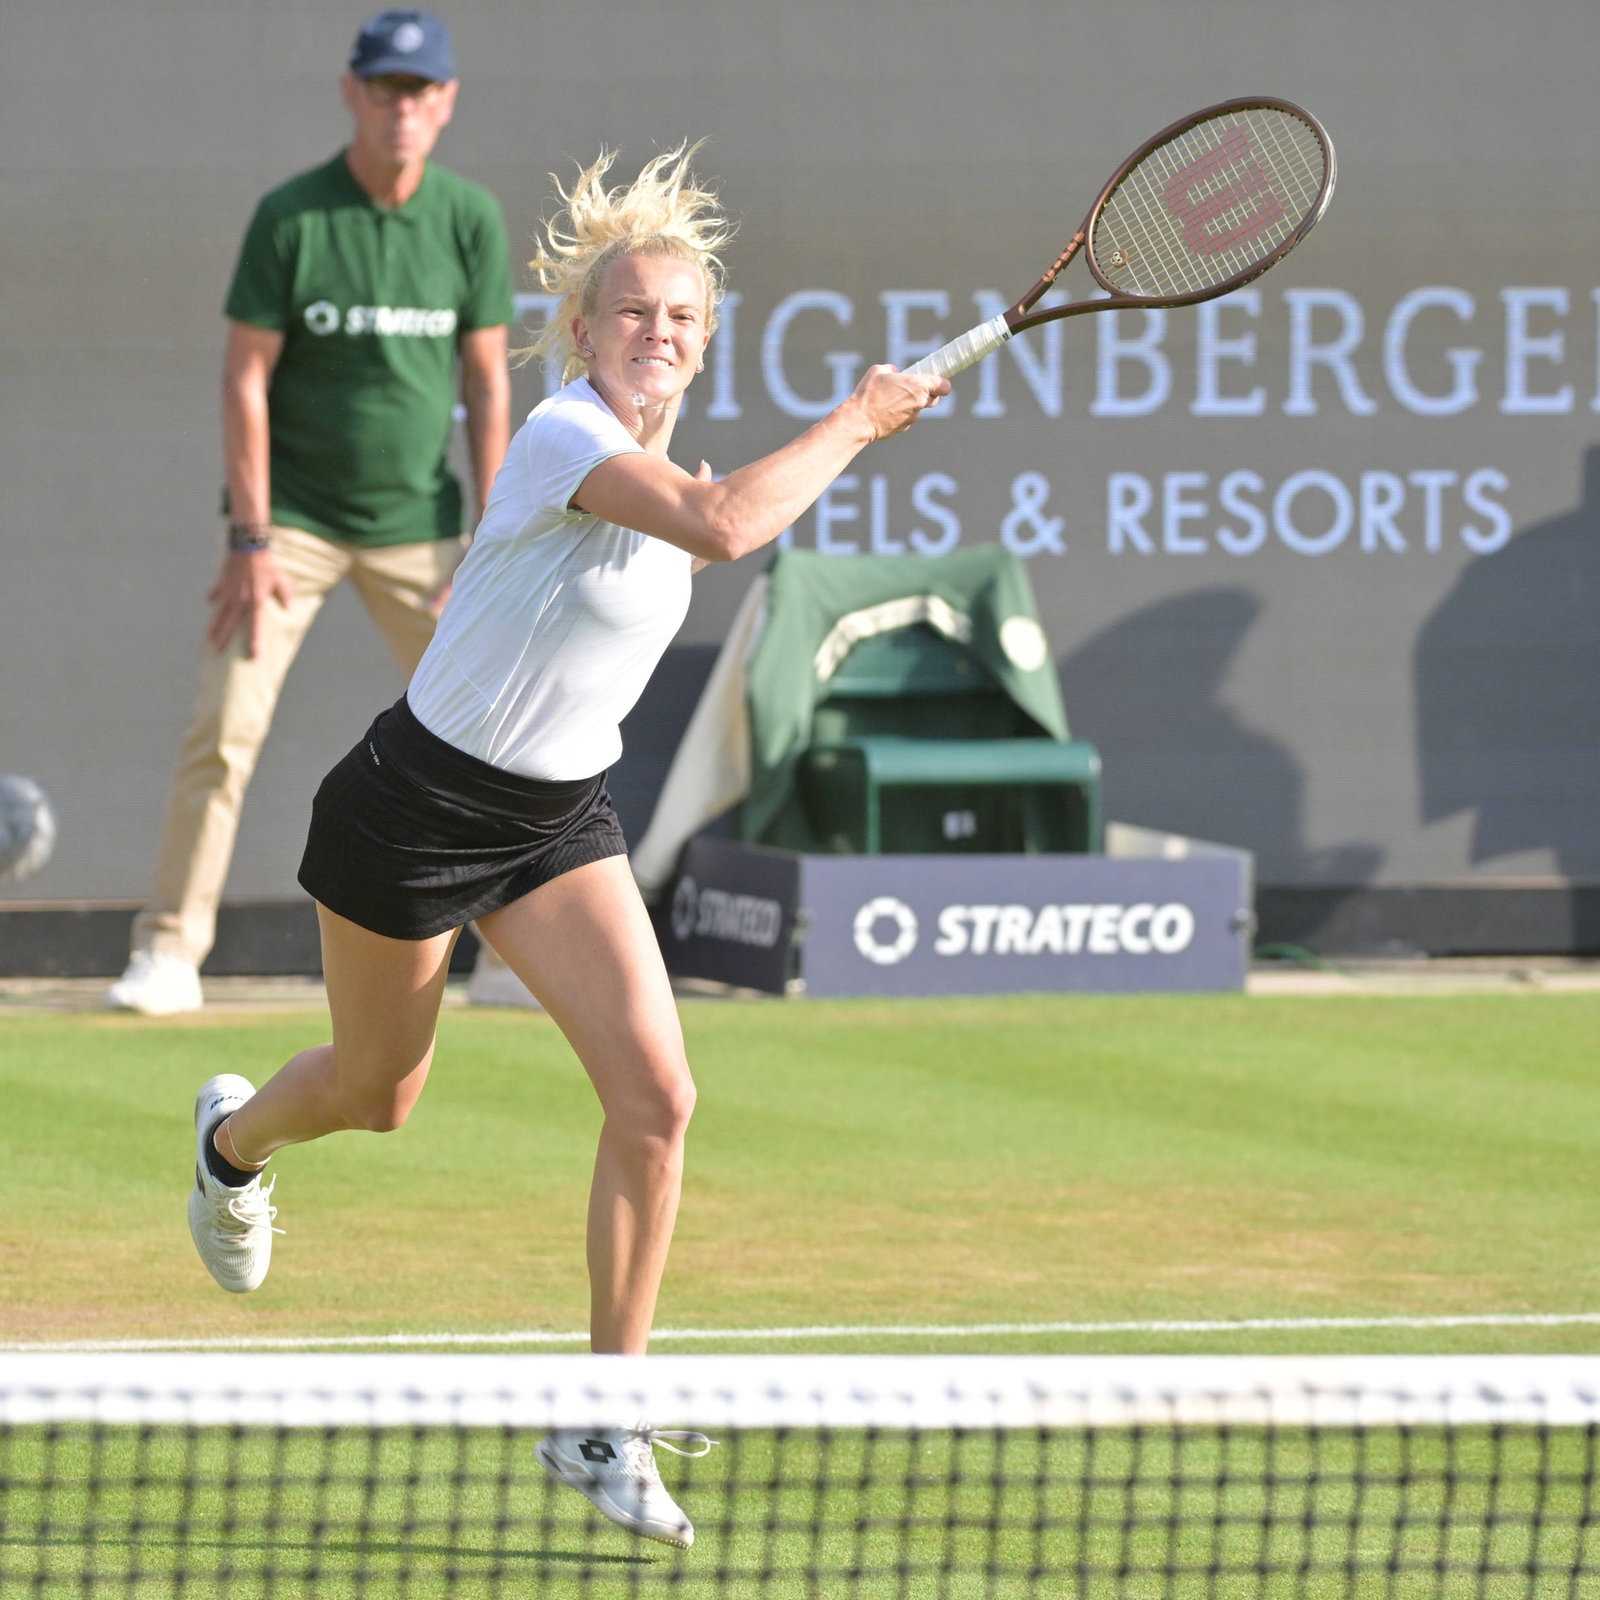 Tennis-Turnier in Bad Homburg Katerina Siniakova zieht souverän ins Finale ein hessenschau.de Mehr Sport